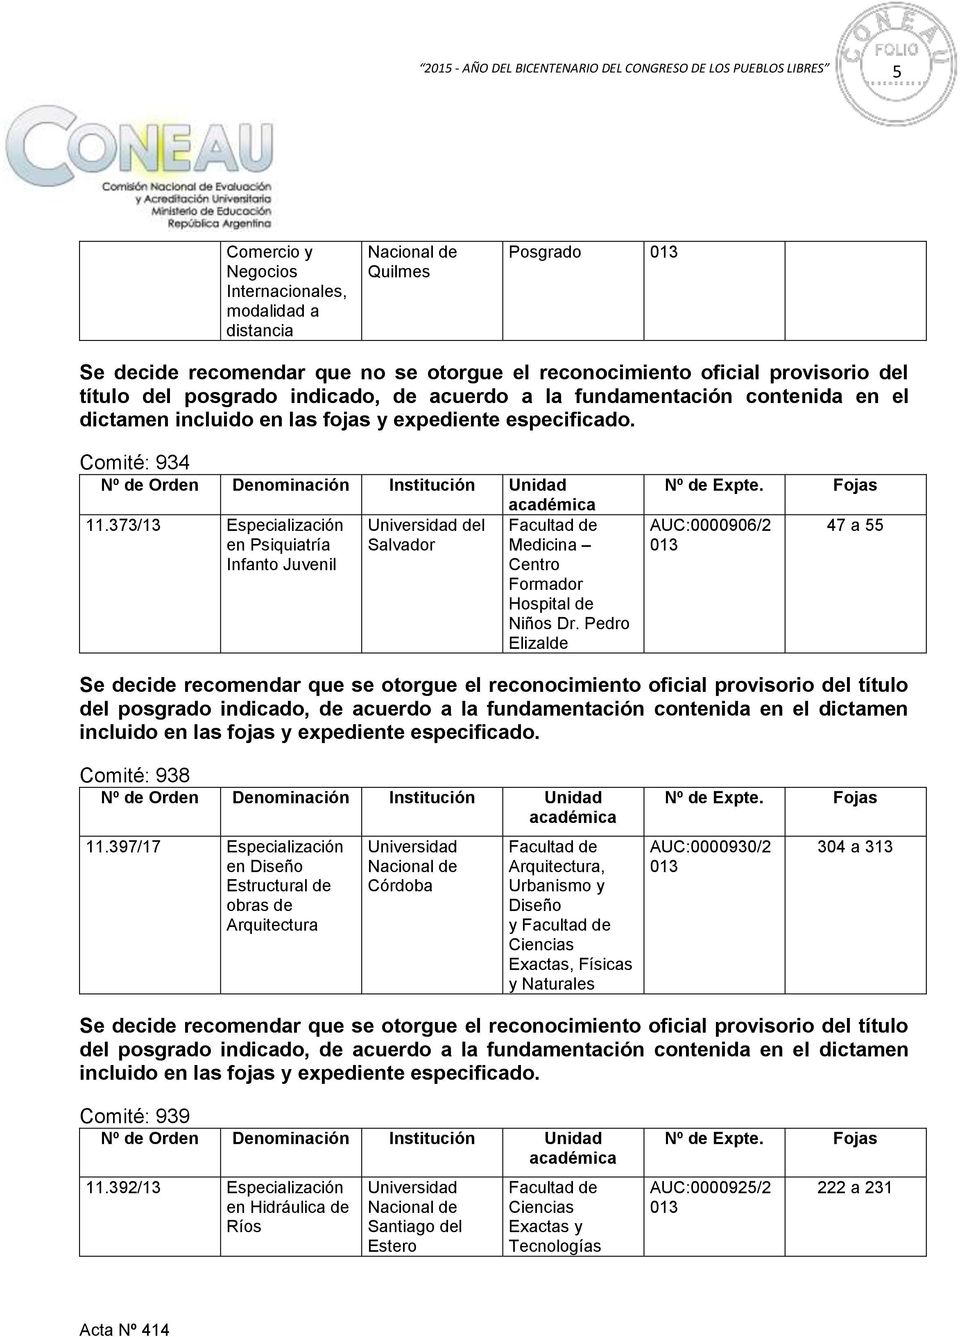 373/13 Especialización en Psiquiatría Infanto Juvenil del Salvador Medicina Centro Hospital de Niños Dr. Pedro Elizalde Expte.